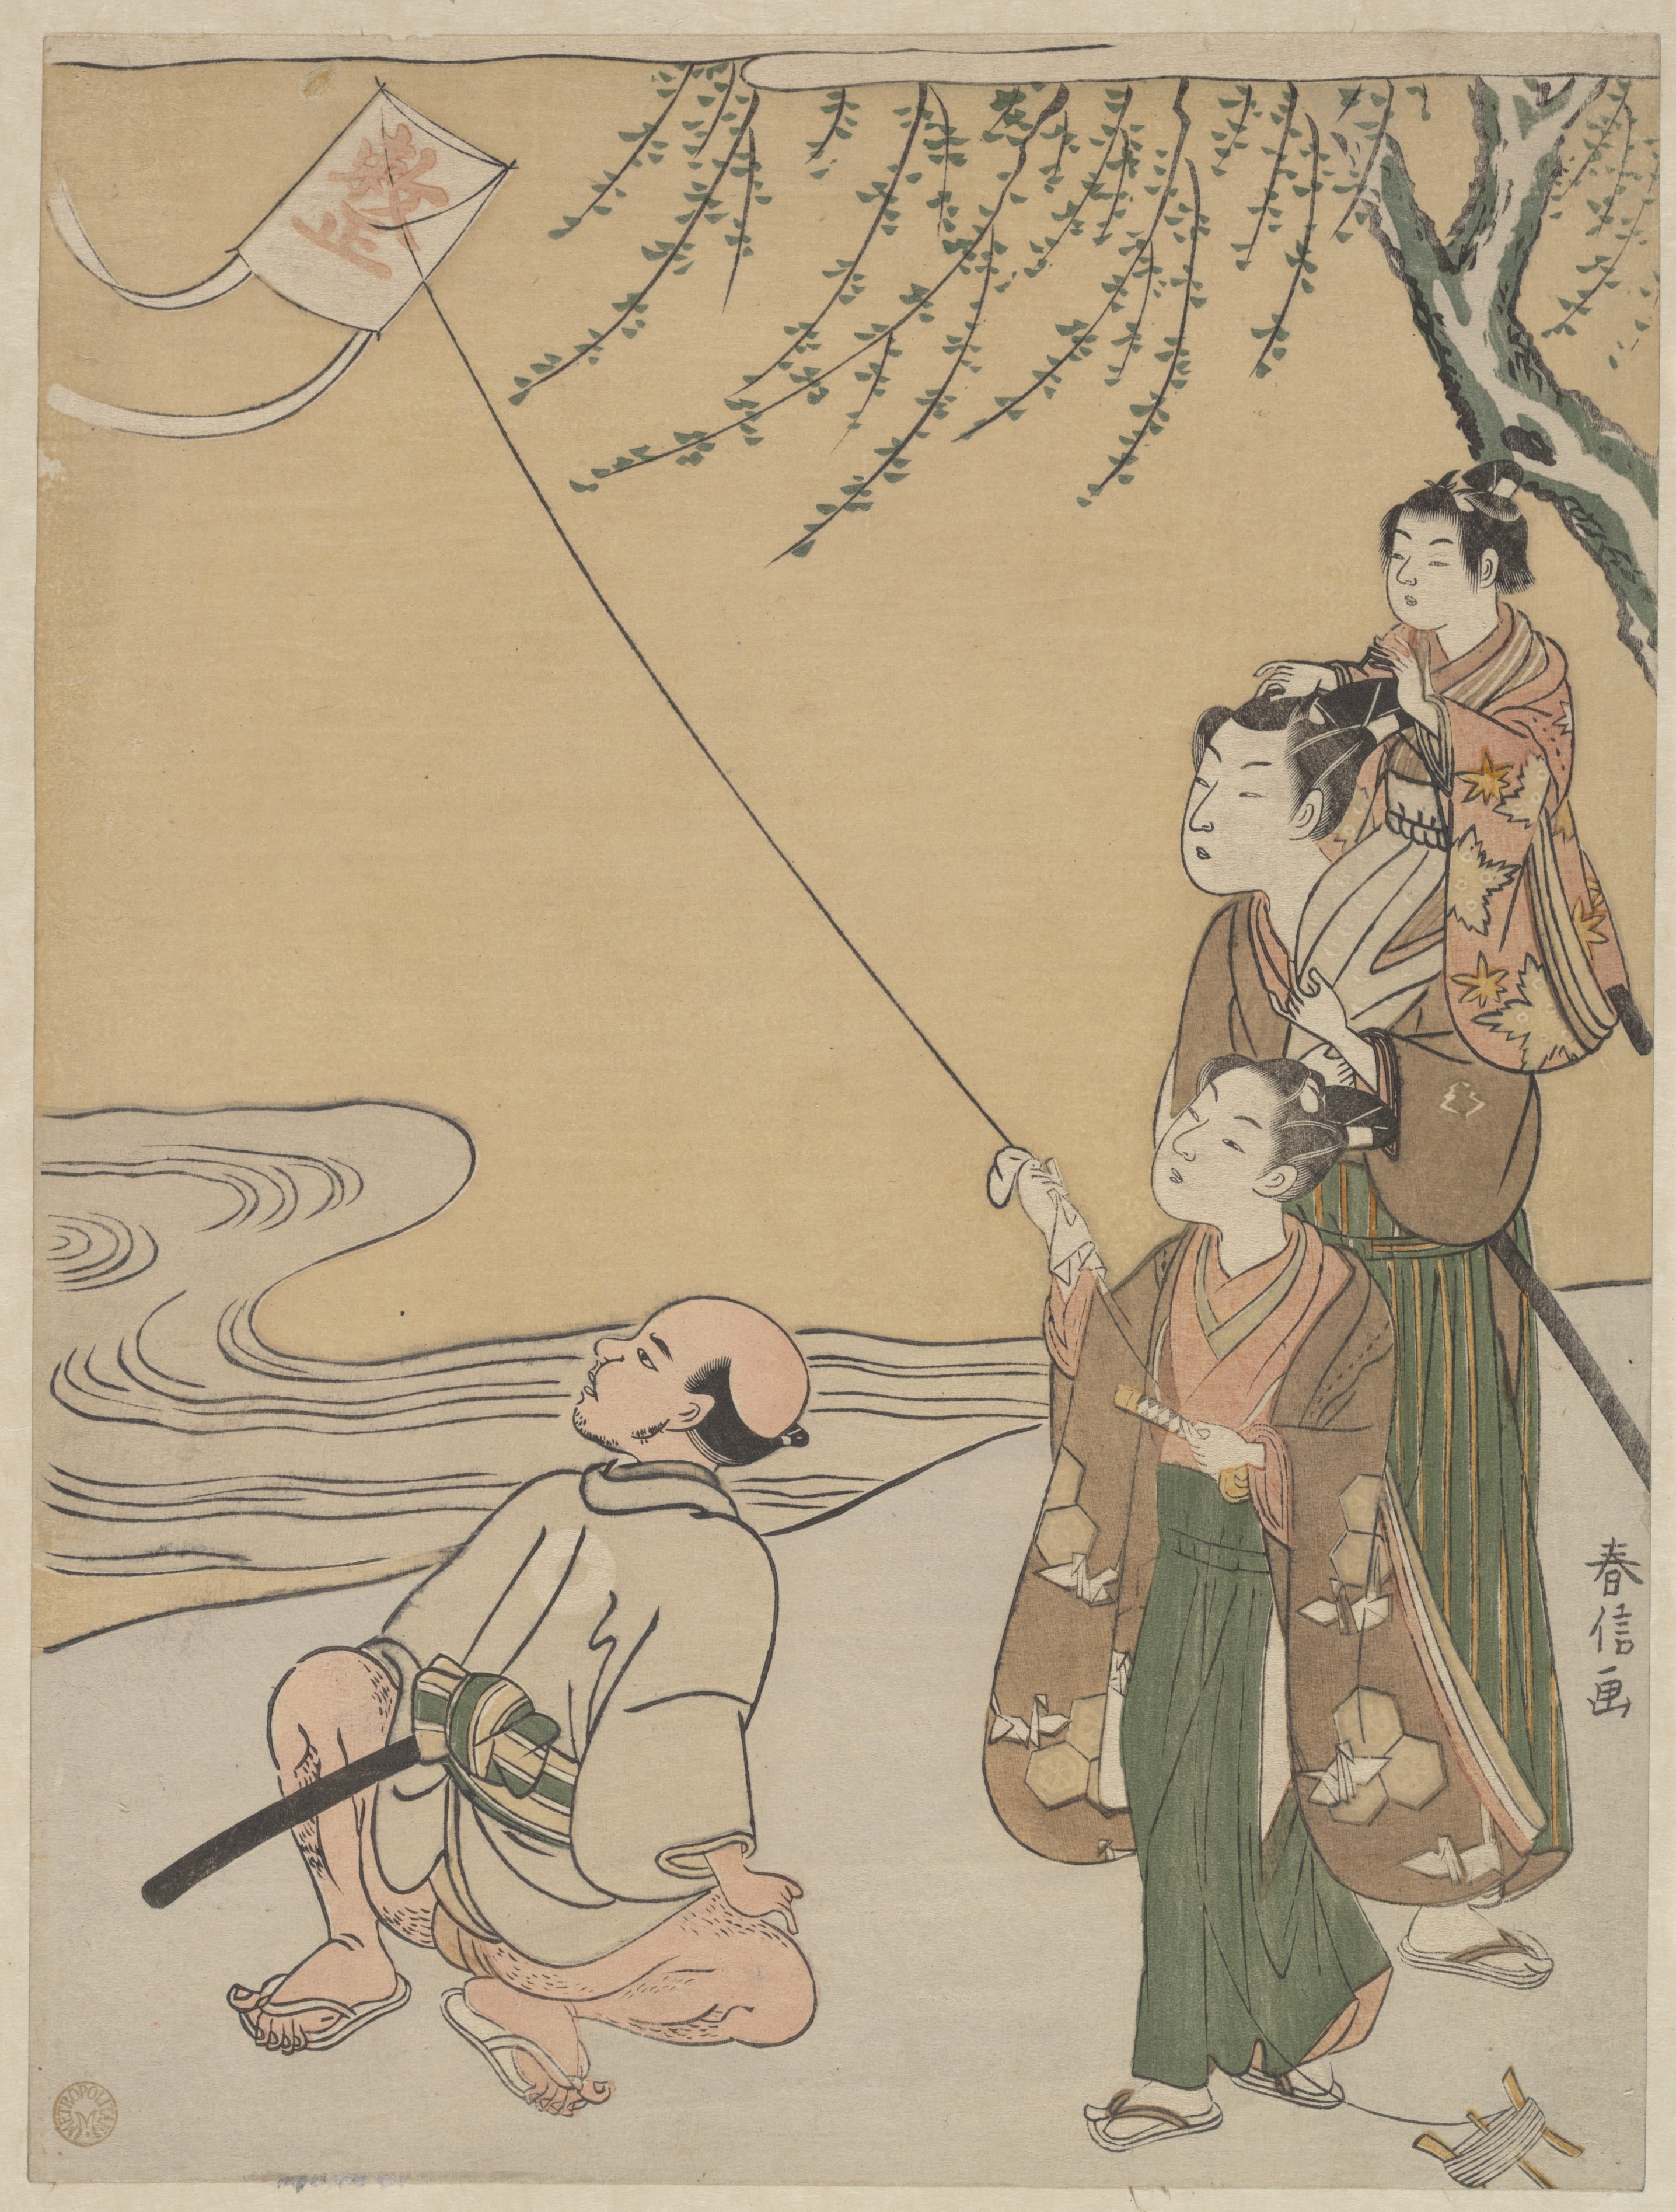 Înălțarea zmeului by Suzuki Harunobu - 1766 - 27.3 x 20.6 cm 